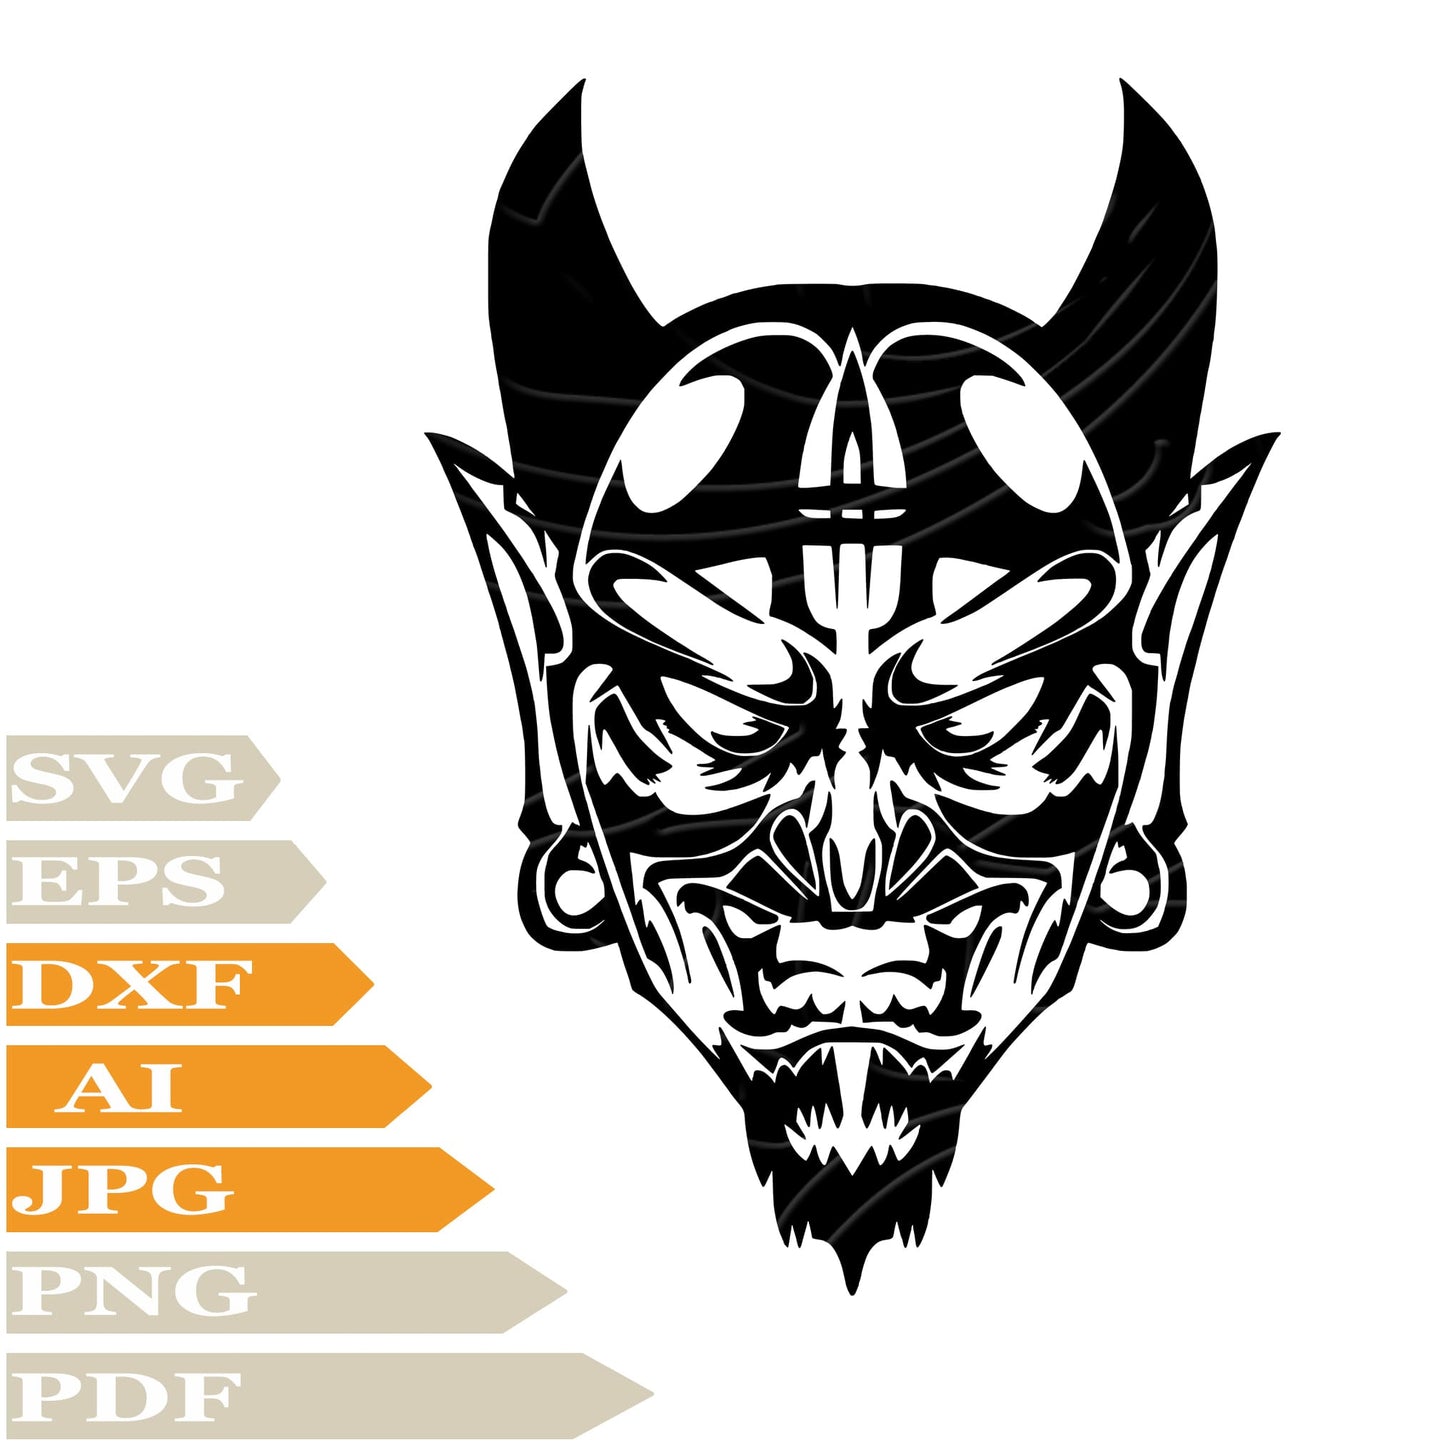 Devil ﻿SVG, Monster SVG Design, Angry Devil Personalised SVG, Devil PNG, Devil Vector Graphics, Devil For Cricut, Digital Instant Download, Clip Art, Cut File, For Shirts, Silhouette